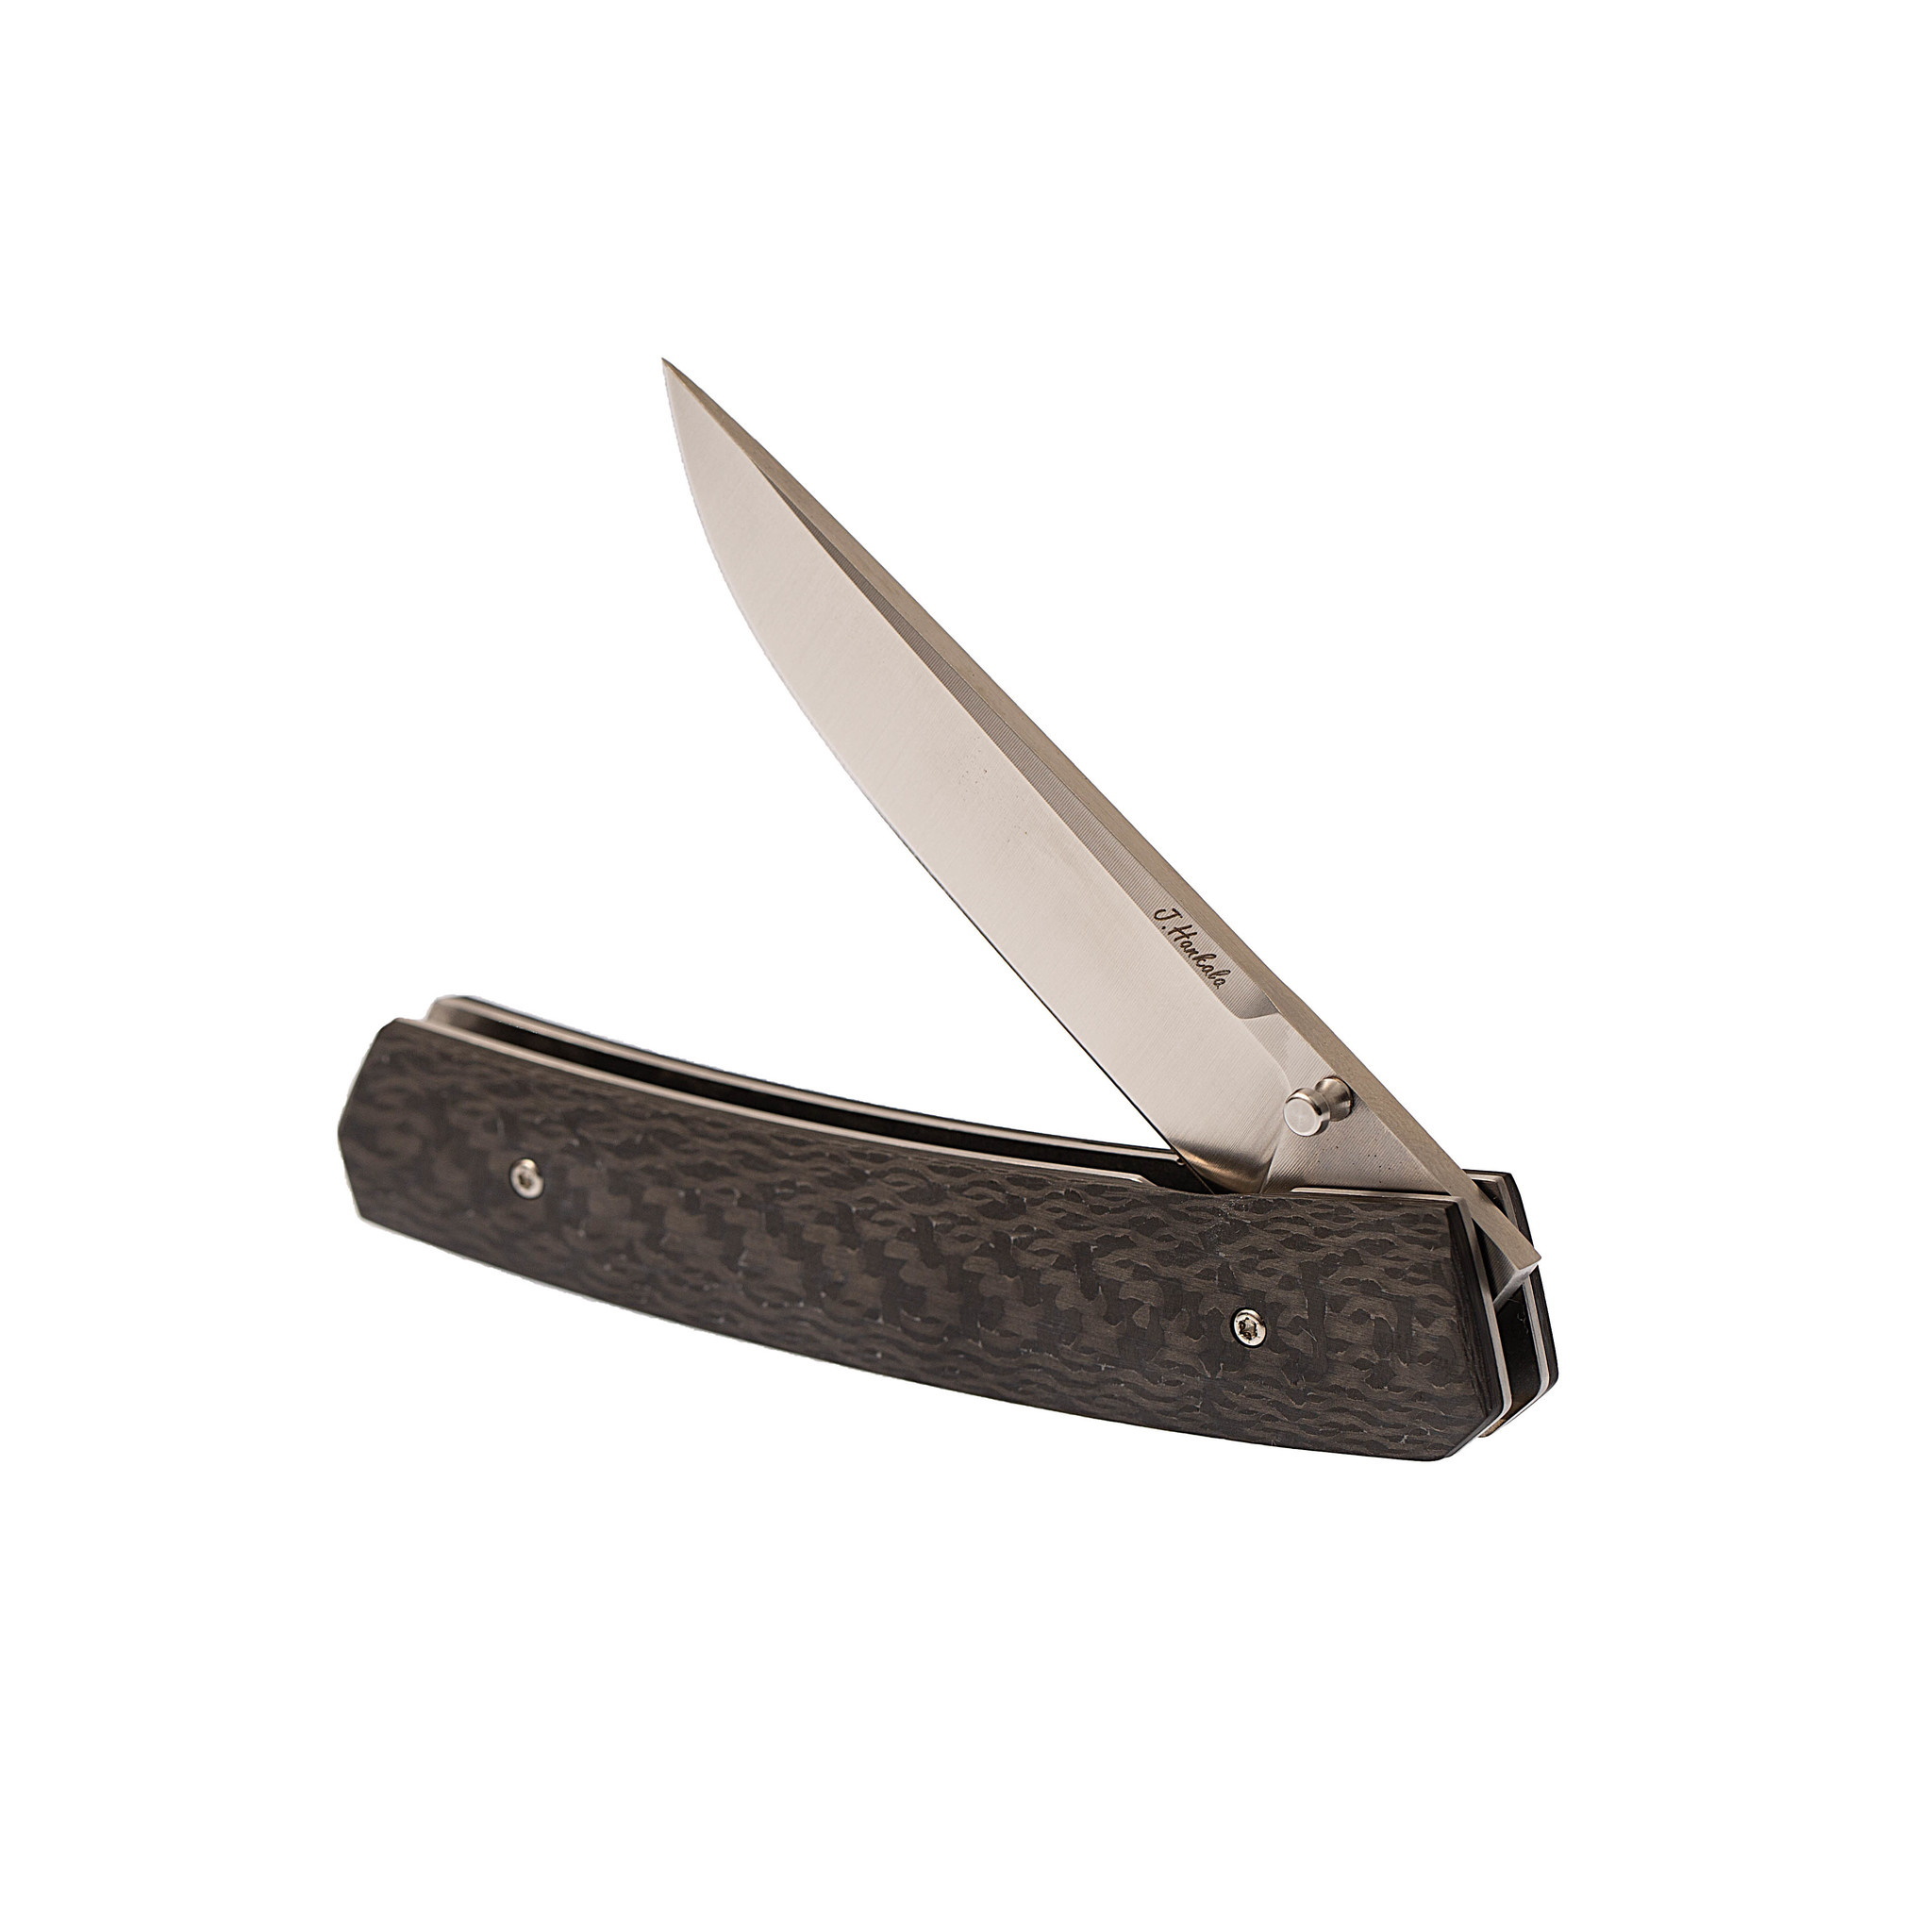 Складной нож Enzo Piili 85, Carbon fiber, порошковая сталь ELMAX - фото 3